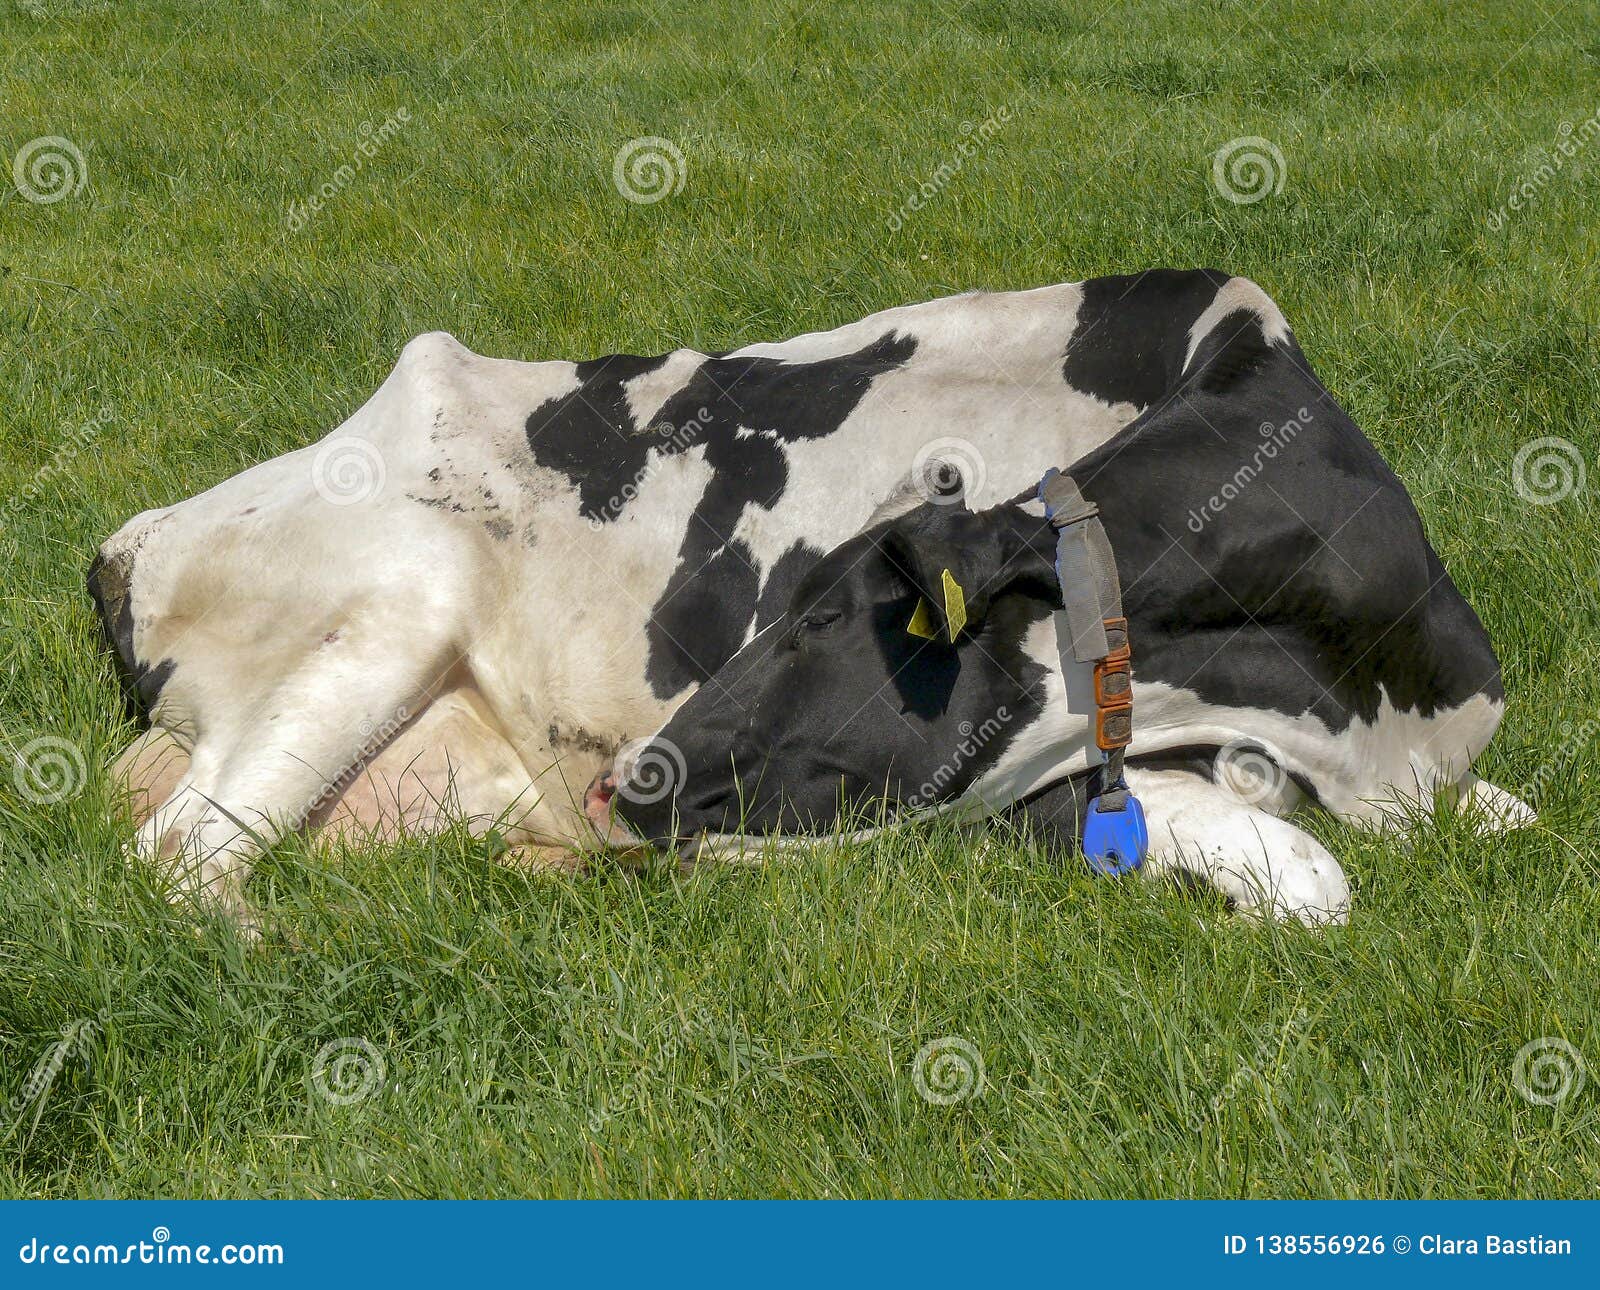 超过 20 张关于“Cow Sleeping”和“奶牛”的免费图片 - Pixabay